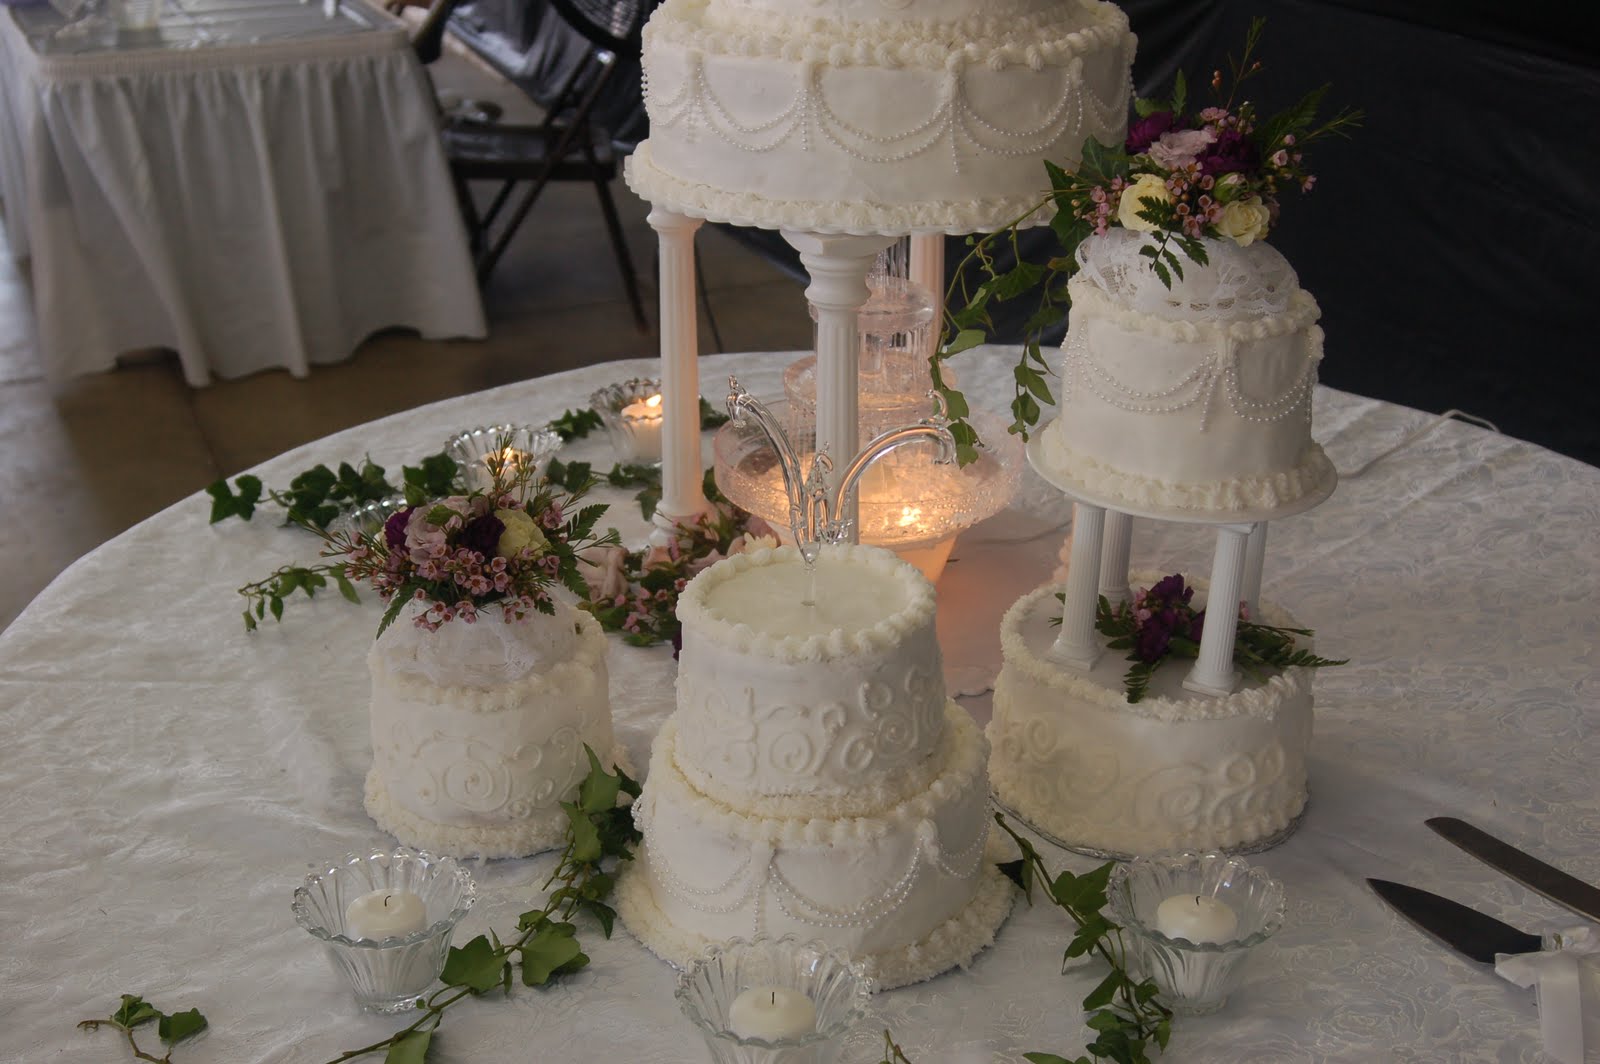 beautiful wedding cake tiers w